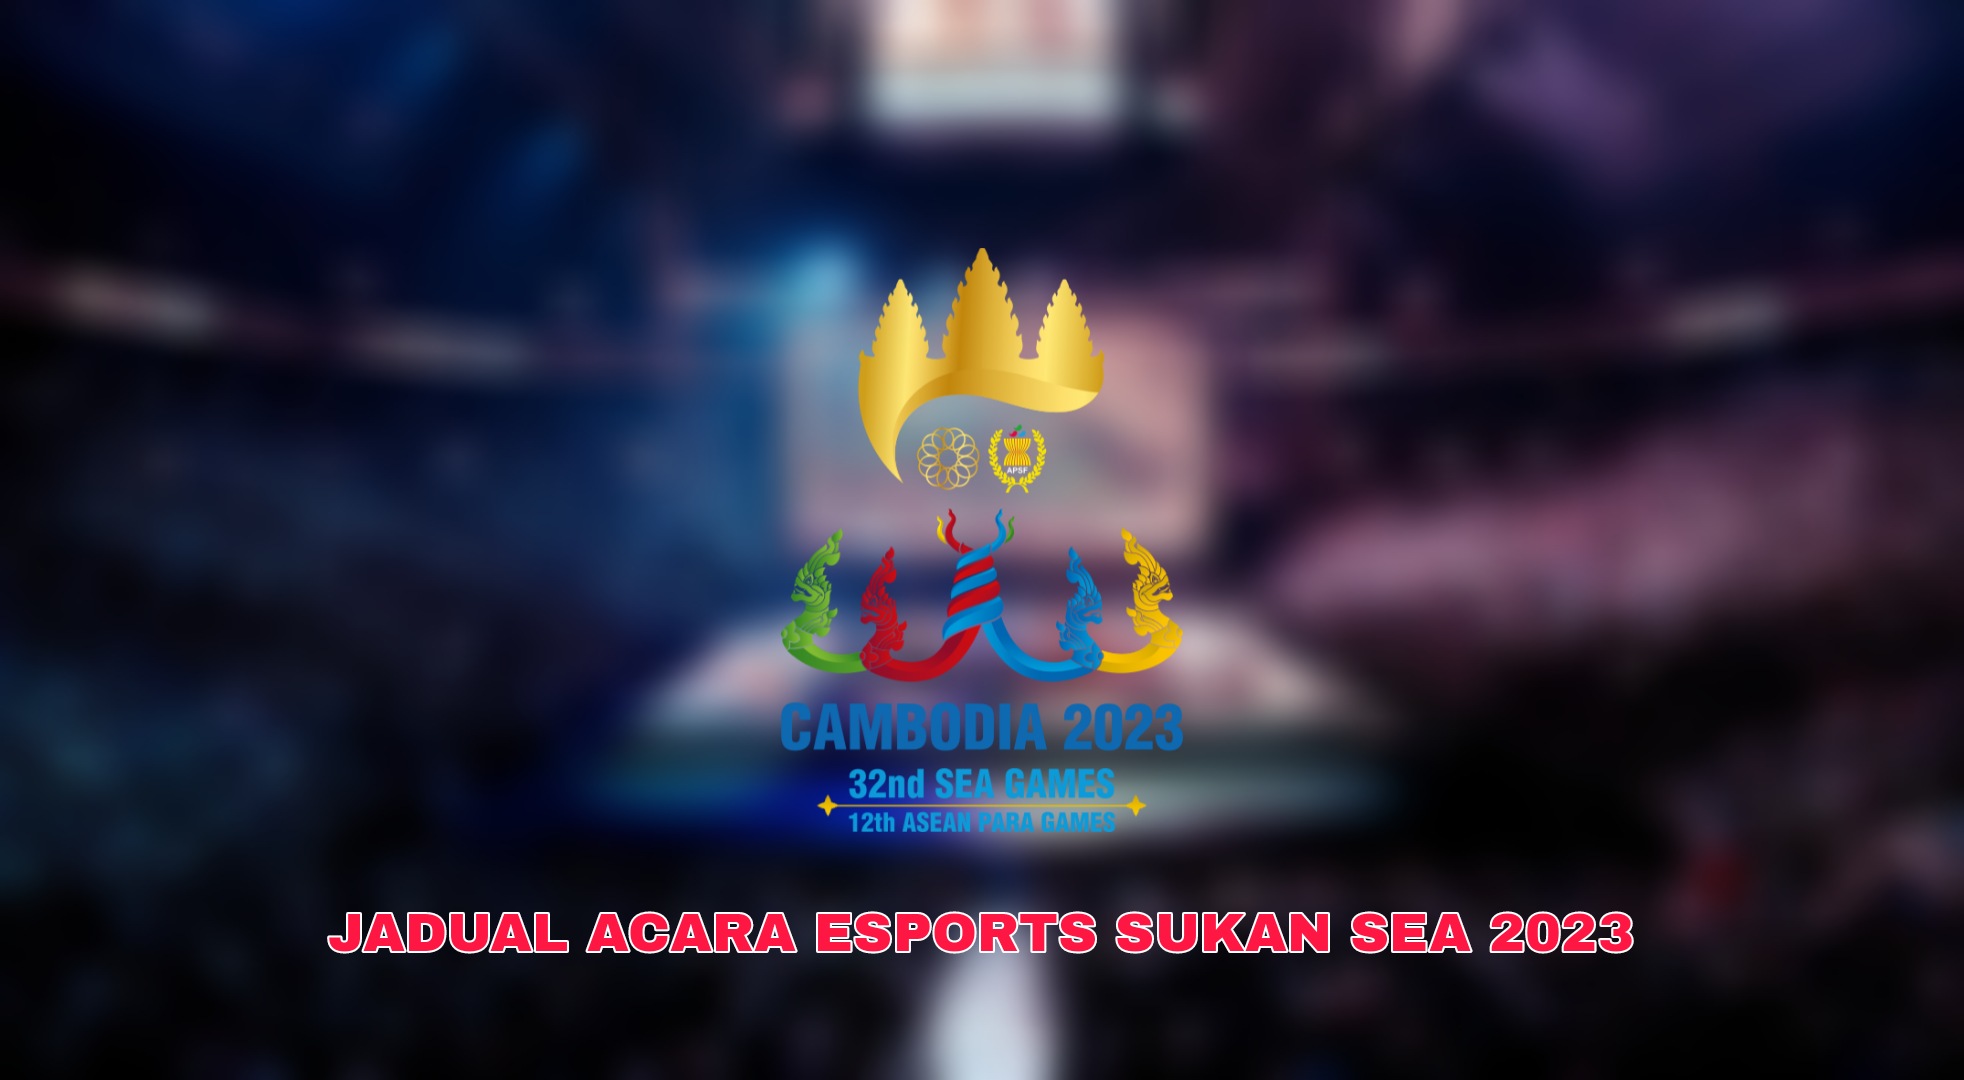 Keputusan E-Sports Sukan SEA 2023 Waktu Malaysia (Jadual)